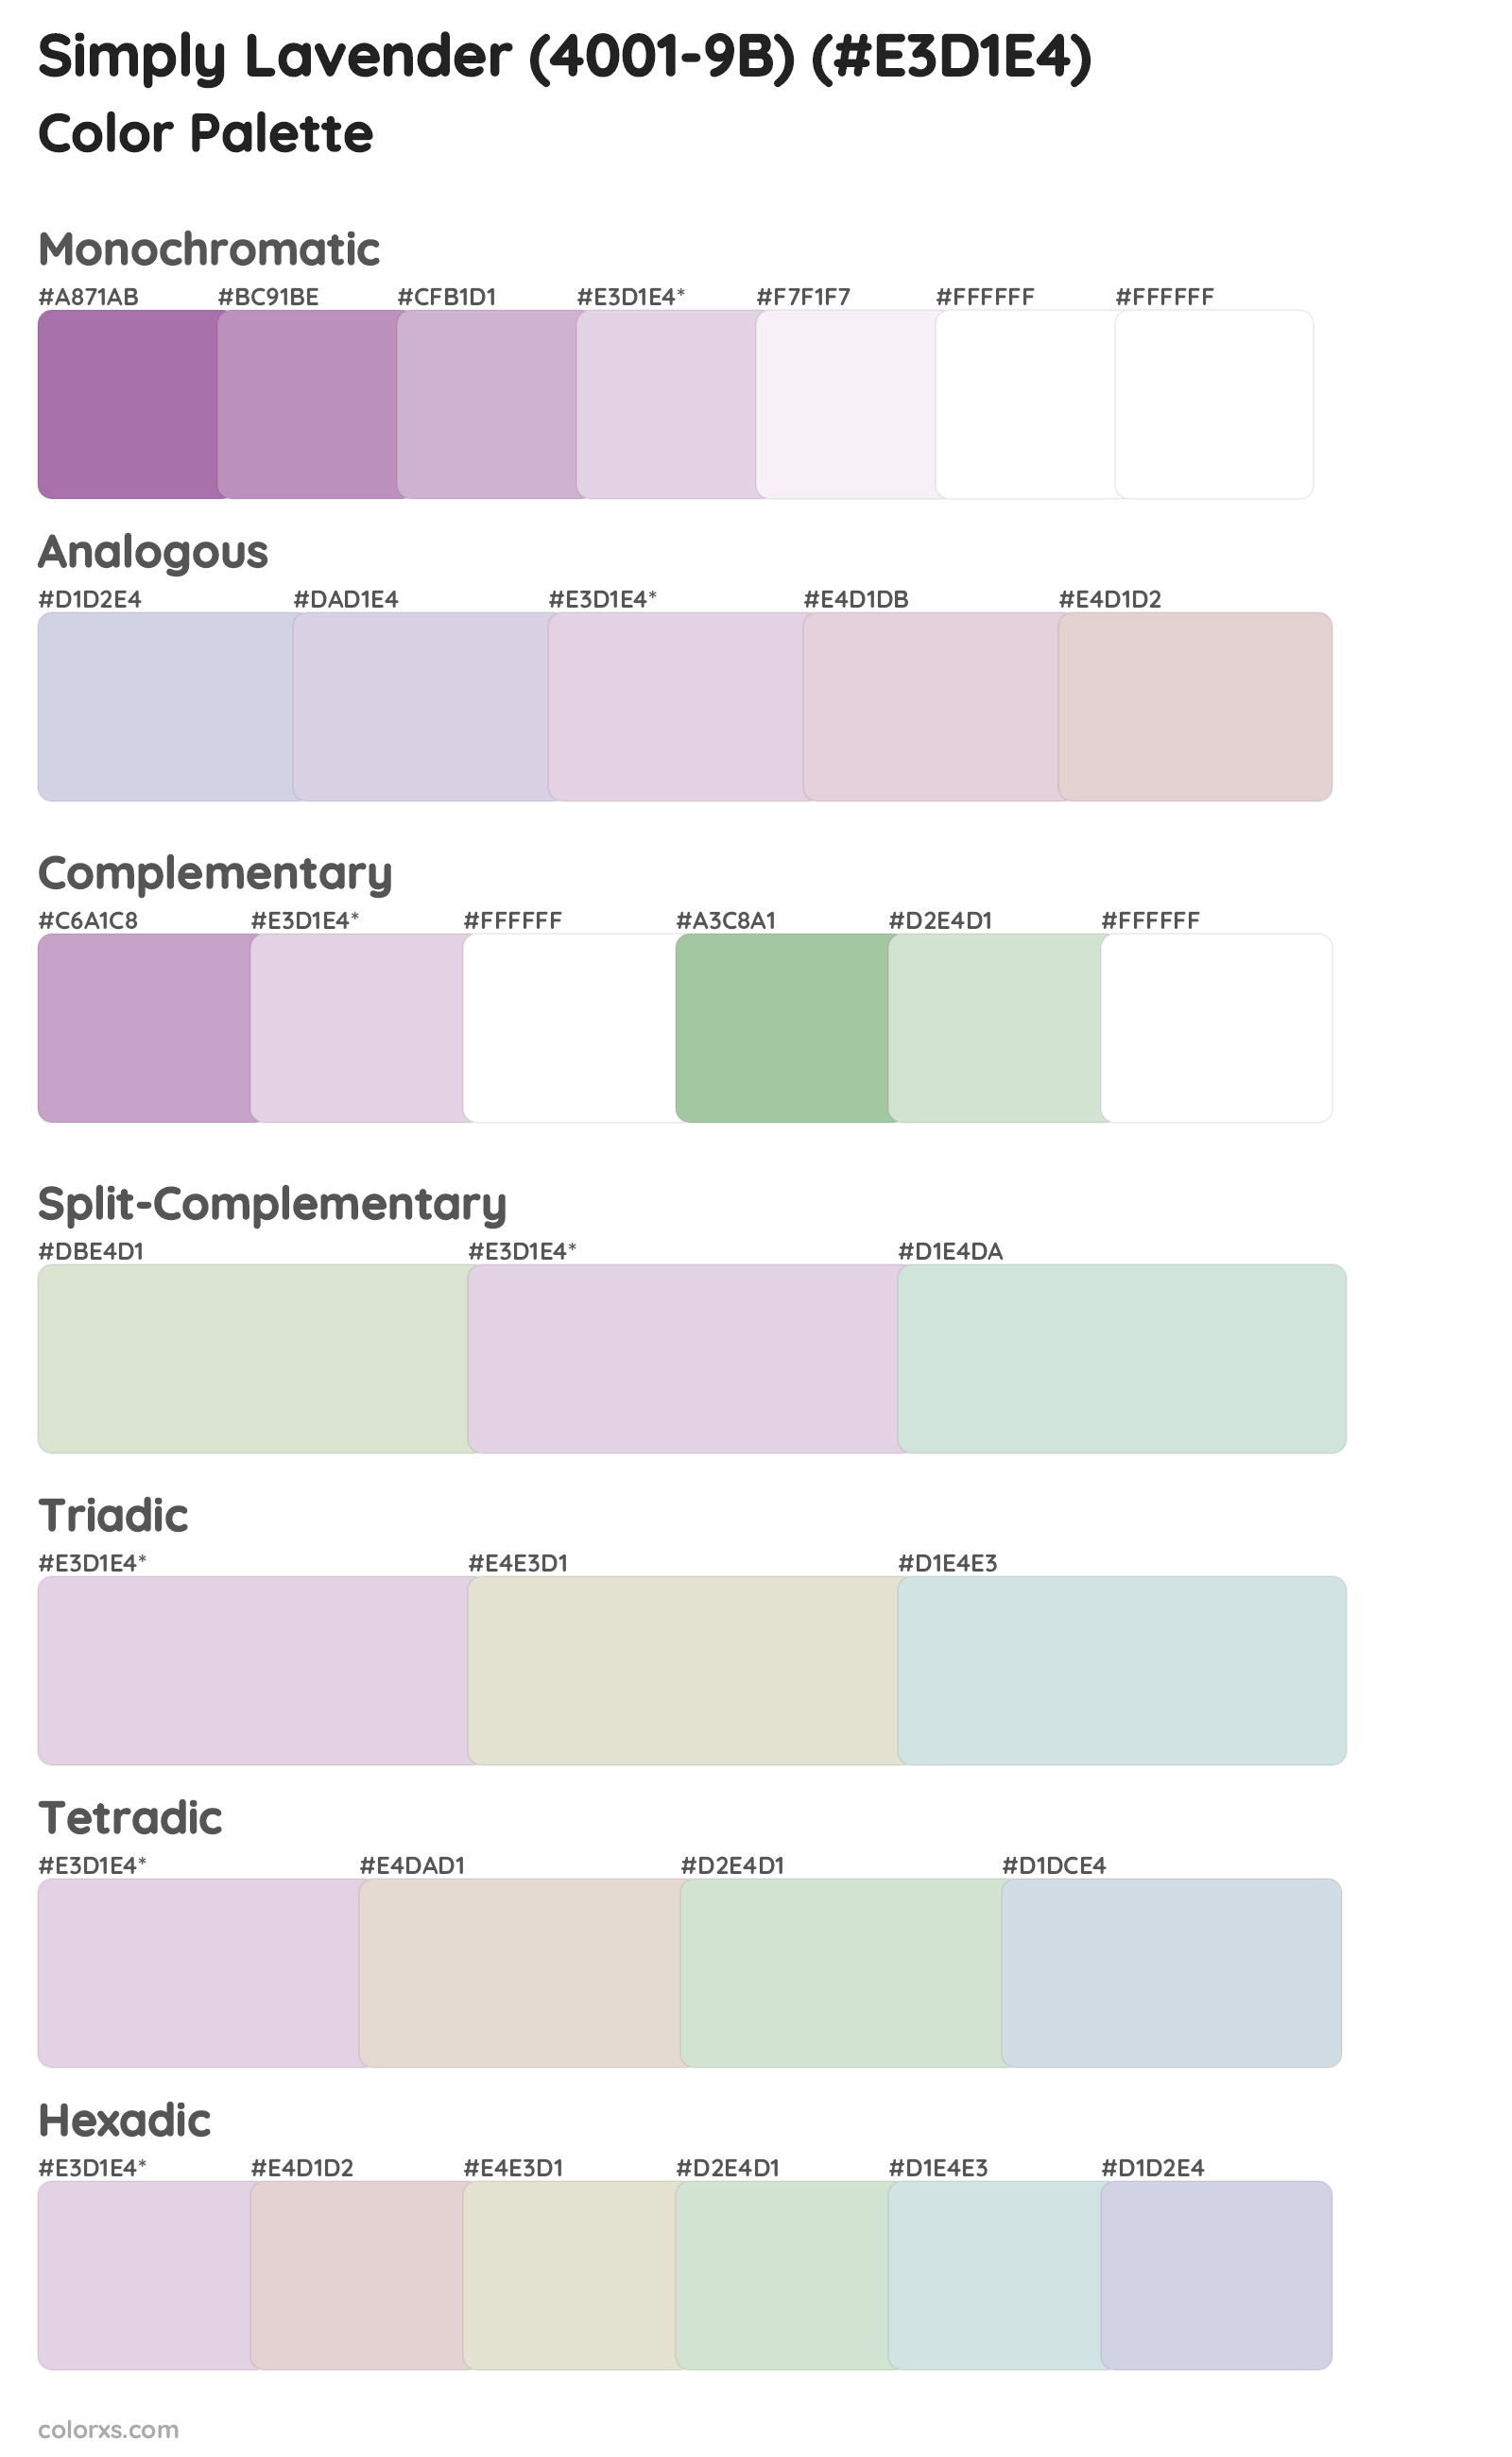 Simply Lavender (4001-9B) Color Scheme Palettes